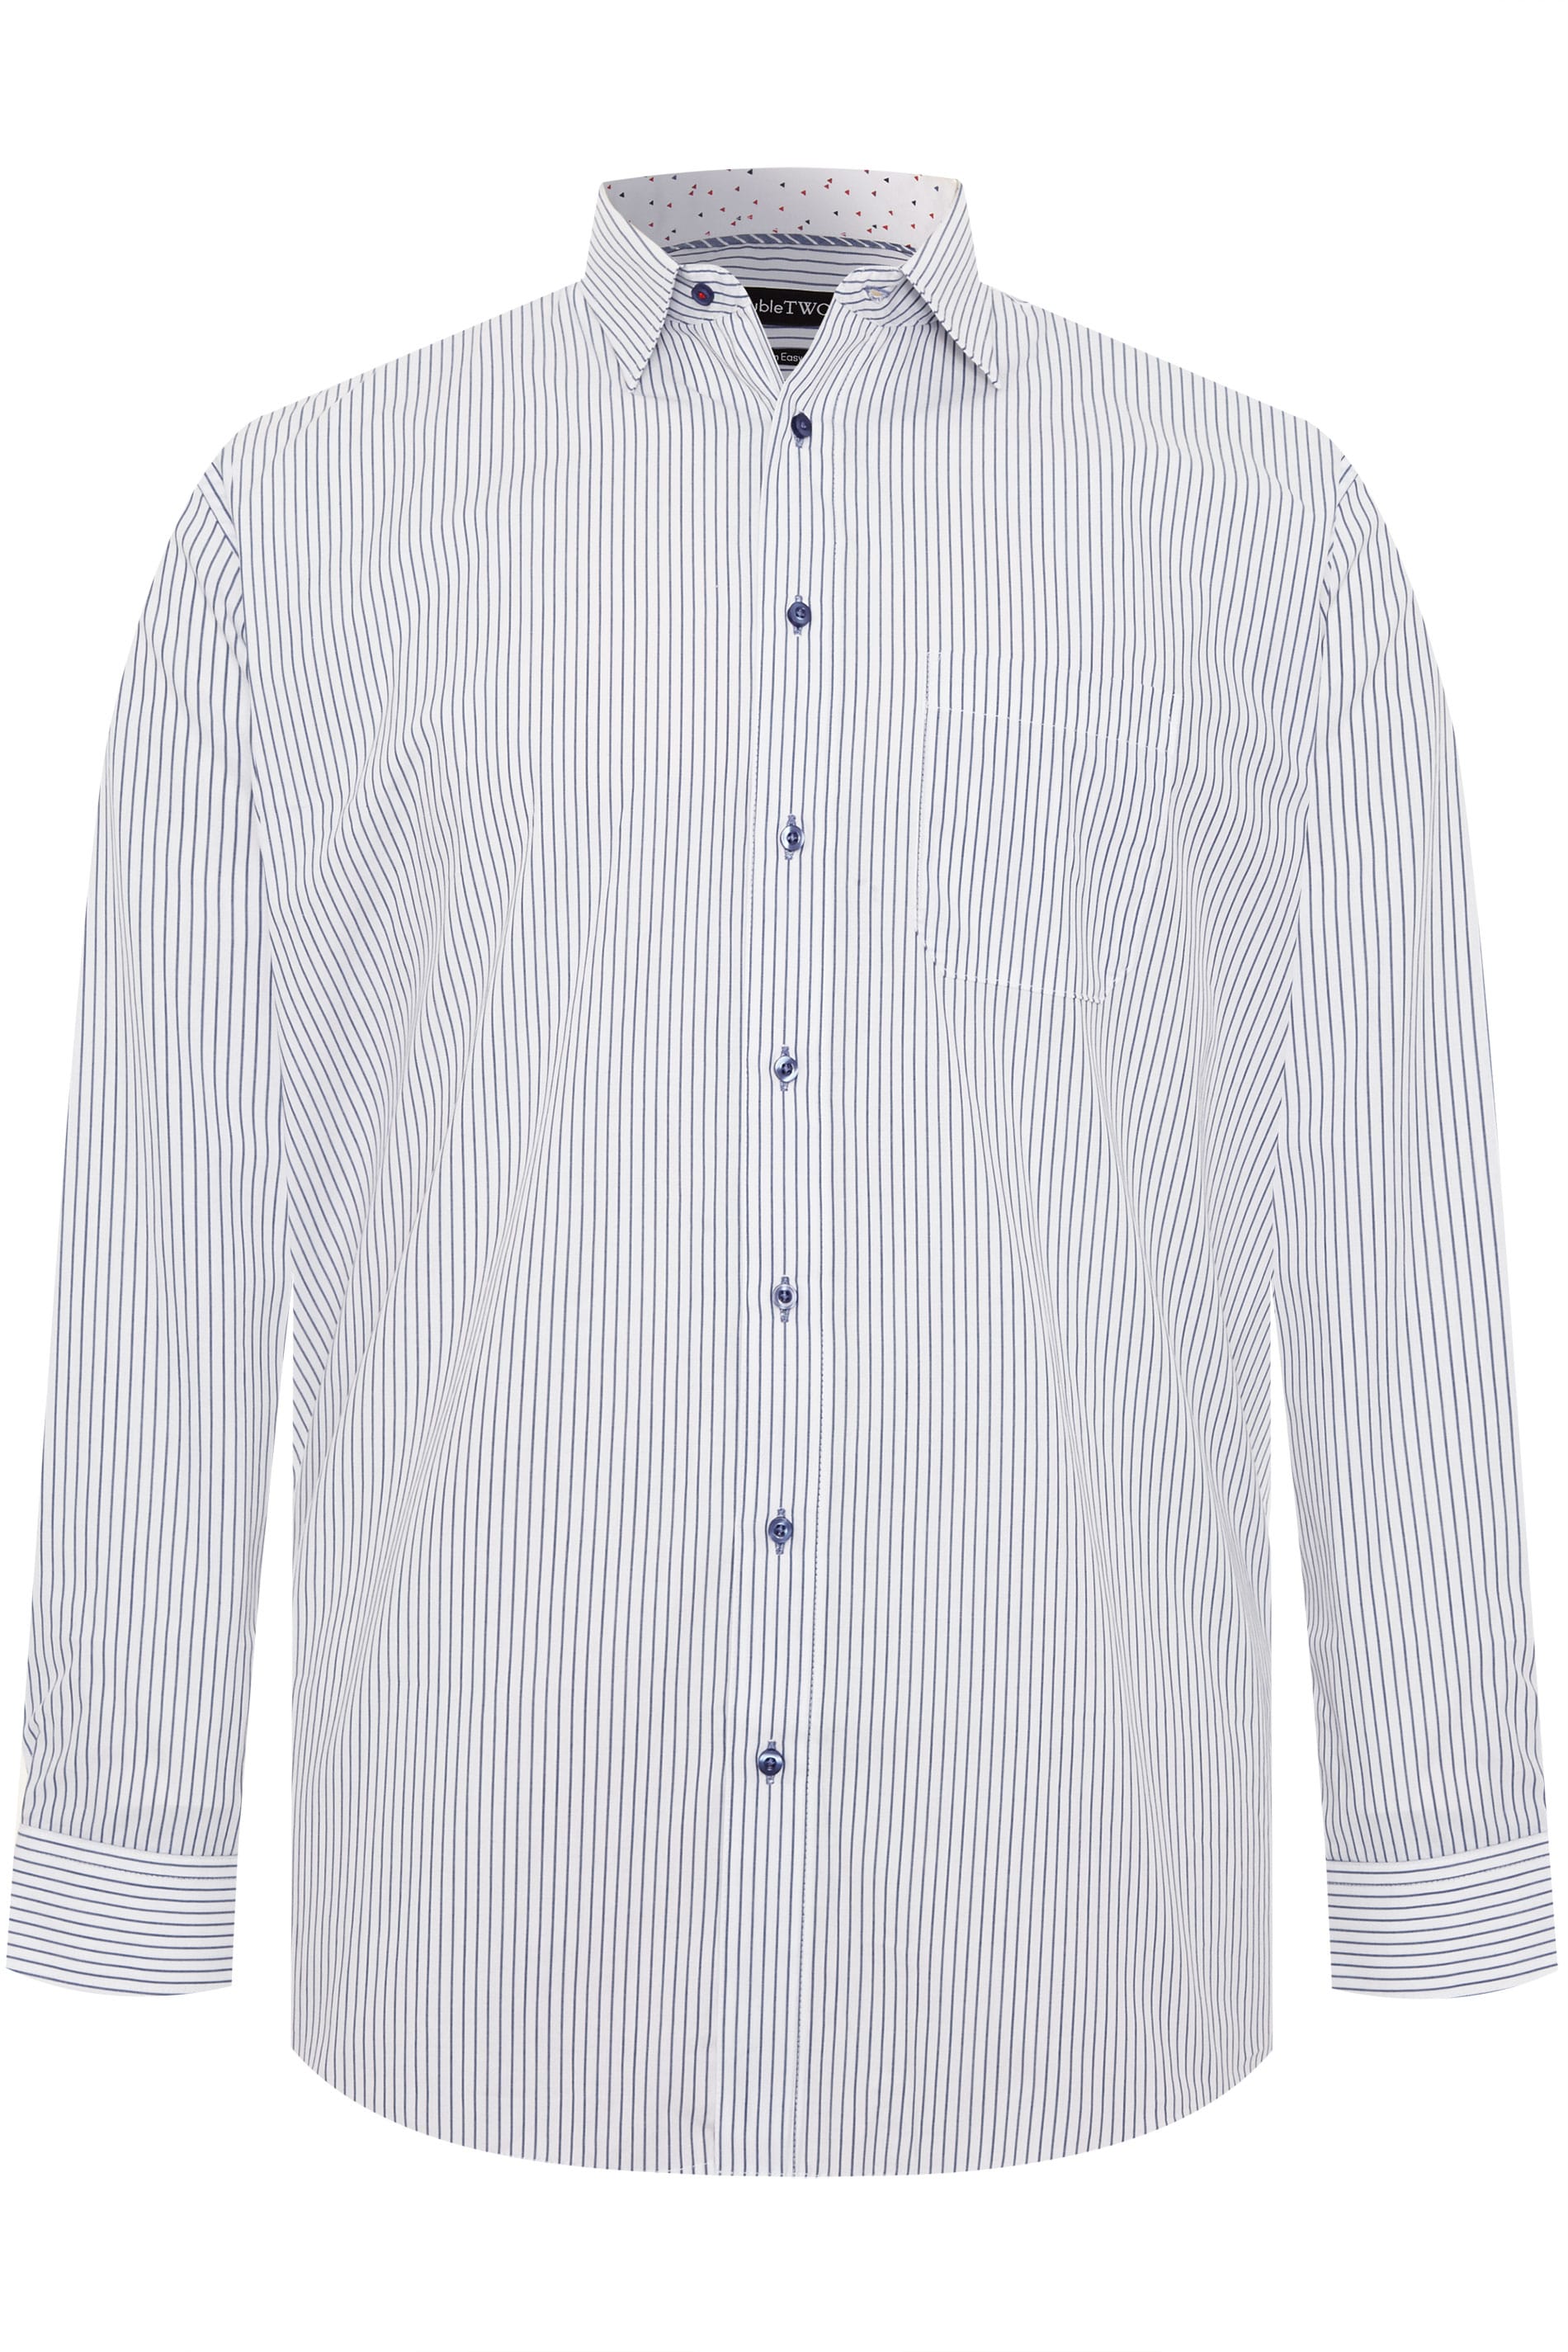 DOUBLE TWO White & Navy Pinstripe Non-Iron Long Sleeve Shirt | BadRhino